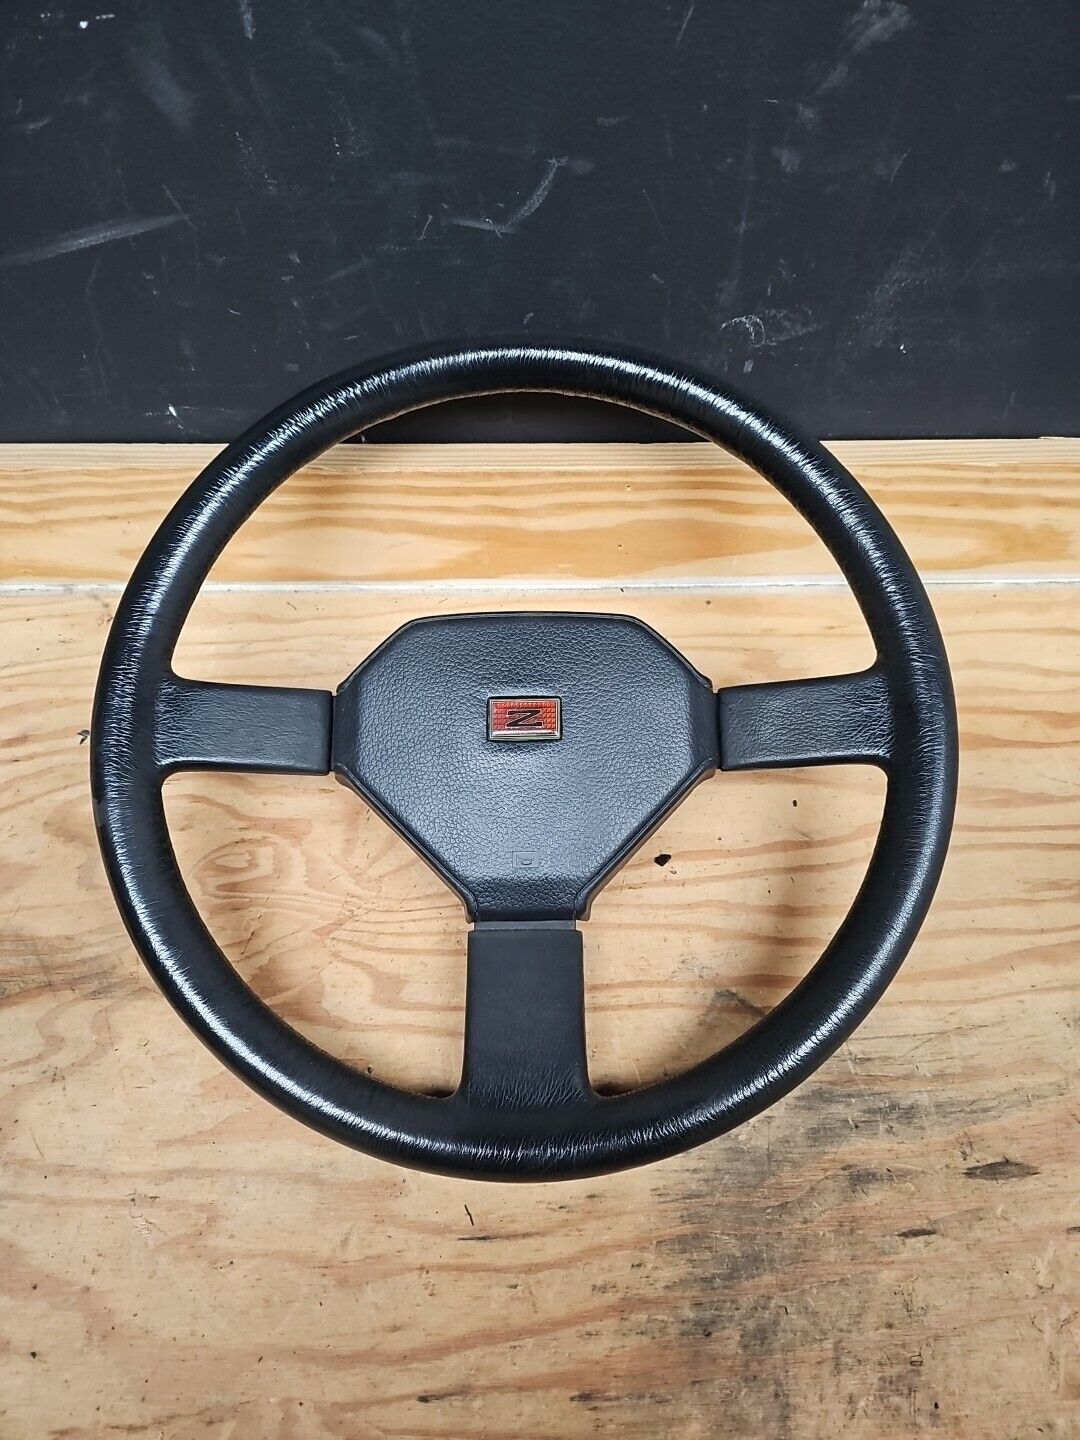 1984-1989 Nissan Datsun 300zx 200ZR Z31 Black JDM 3 Spoke Steering Wheel. RARE